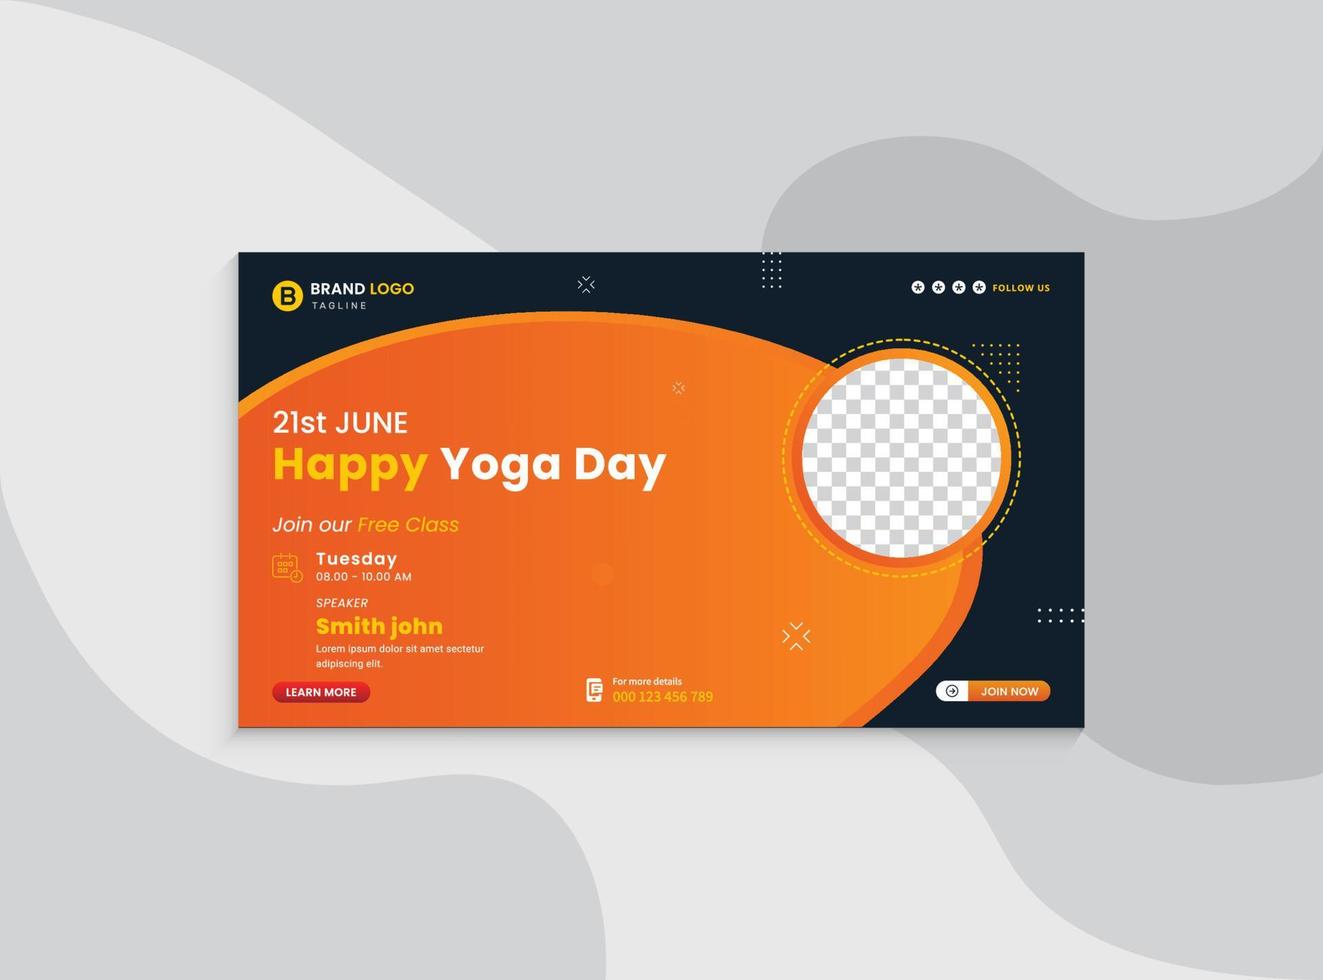 vignette vidéo pour la journée internationale du yoga et le modèle de bannière web. conception de bannière de promotion pour l'atelier d'affaires. couverture vidéo pour la journée de yoga. vecteur de service pro de conception de bannières de la journée mondiale du yoga.